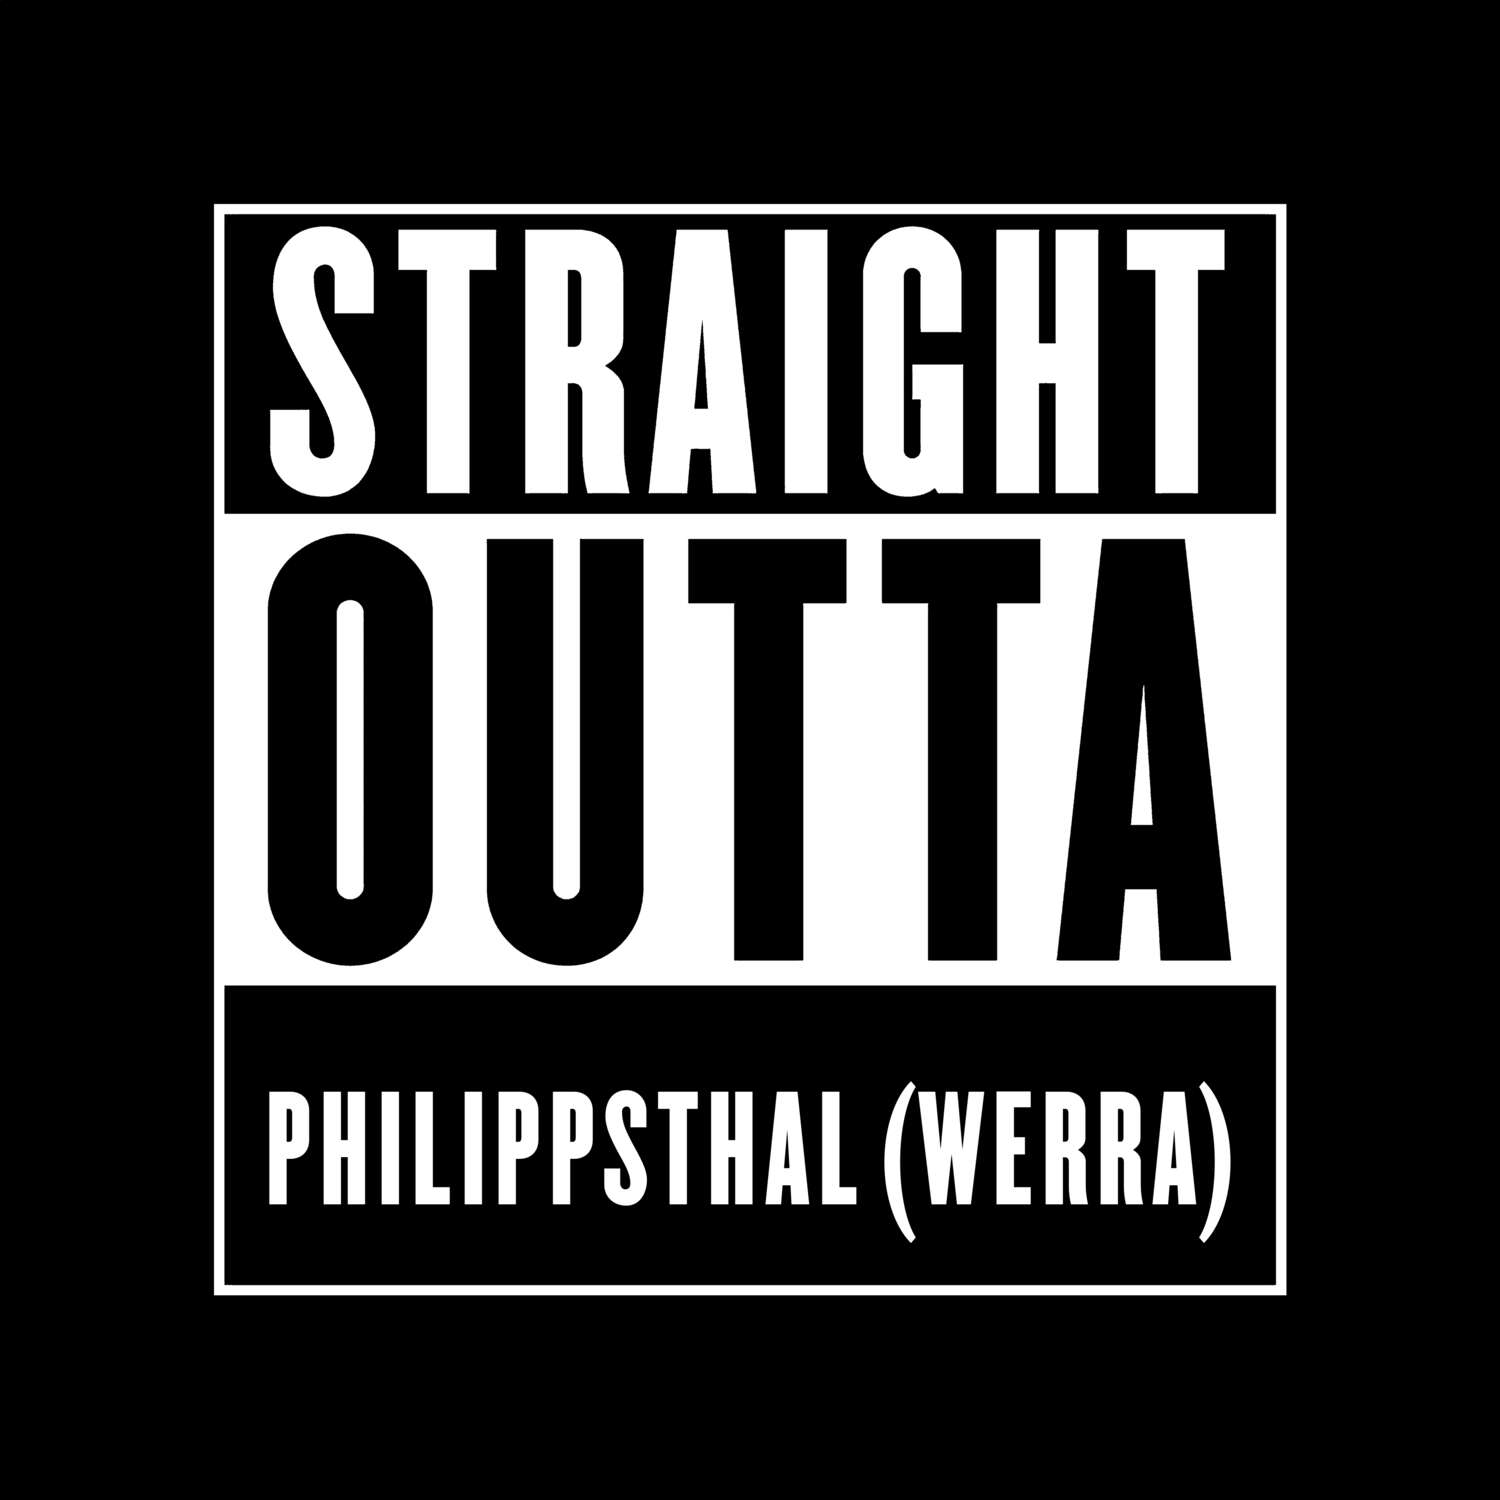 Philippsthal (Werra) T-Shirt »Straight Outta«